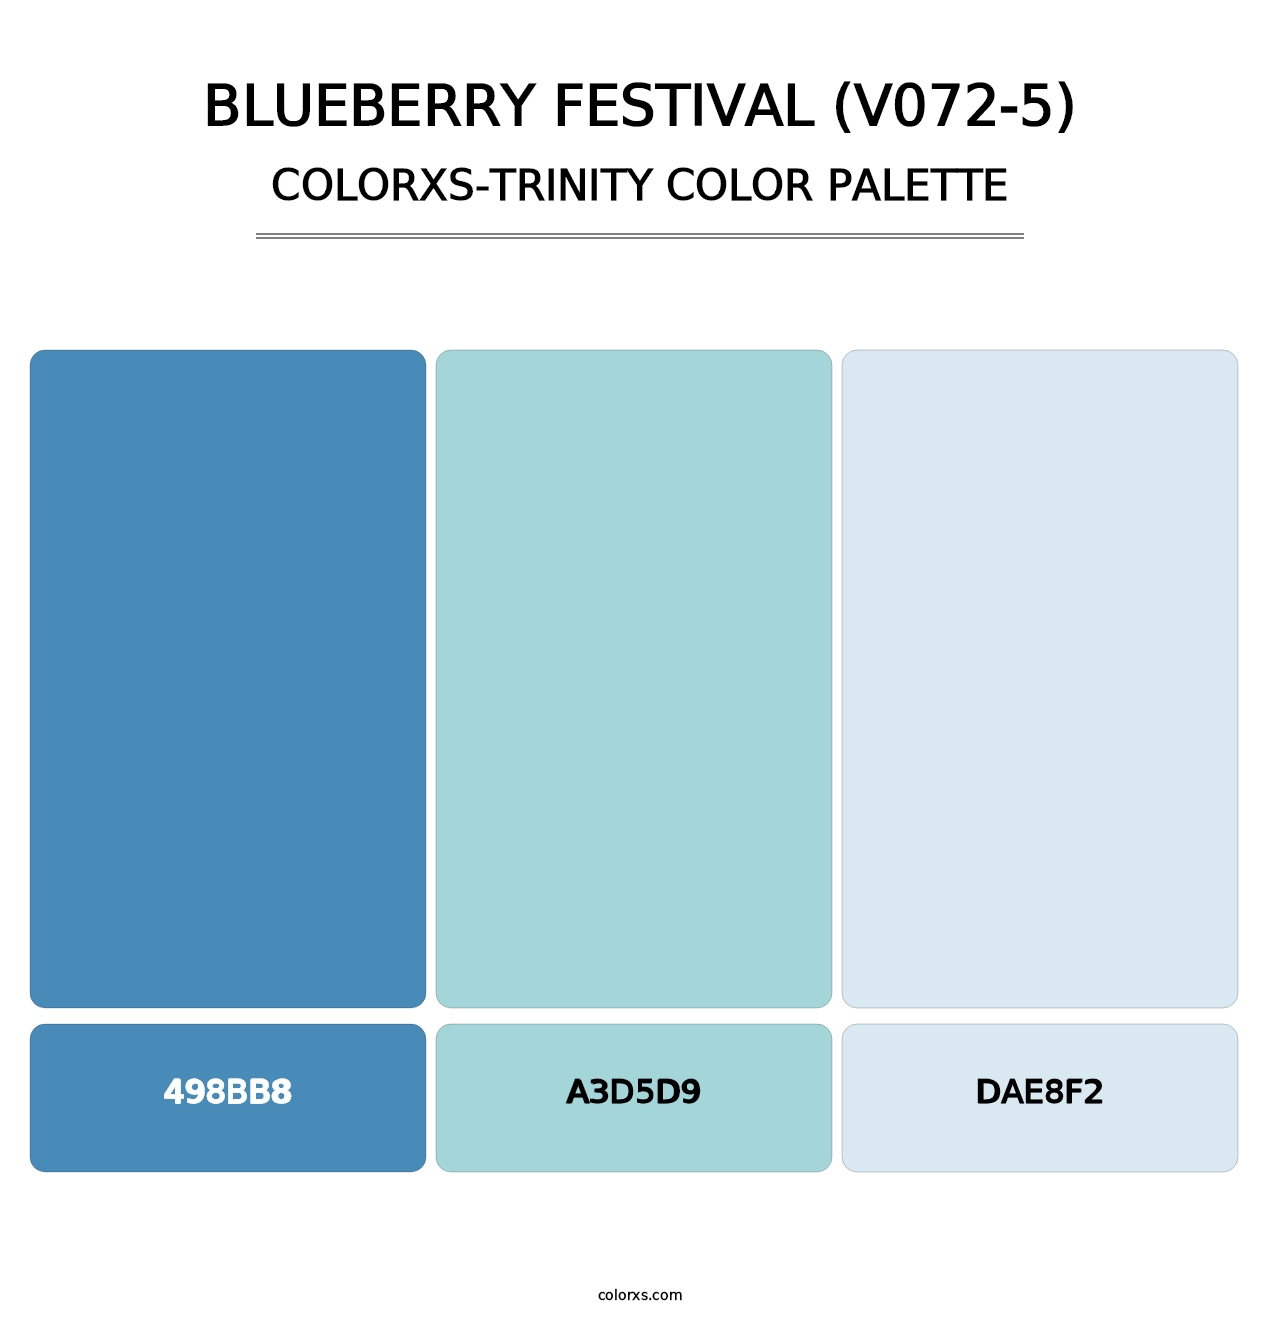 Blueberry Festival (V072-5) - Colorxs Trinity Palette